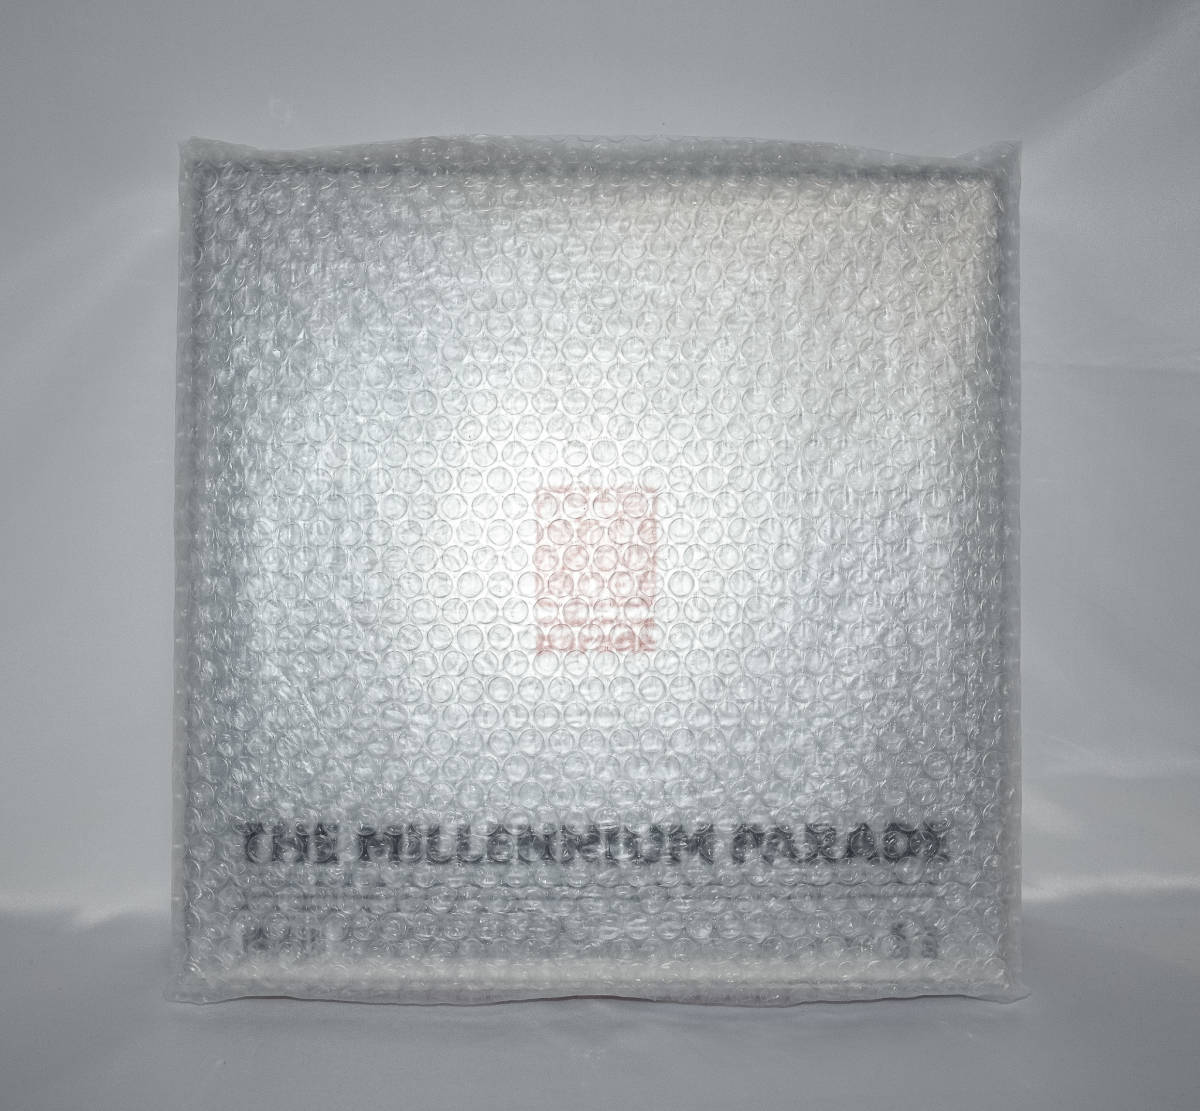 THE MILLENNIUM PARADE 完全生産限定盤 millennium parade ミレニアムパレード_画像7